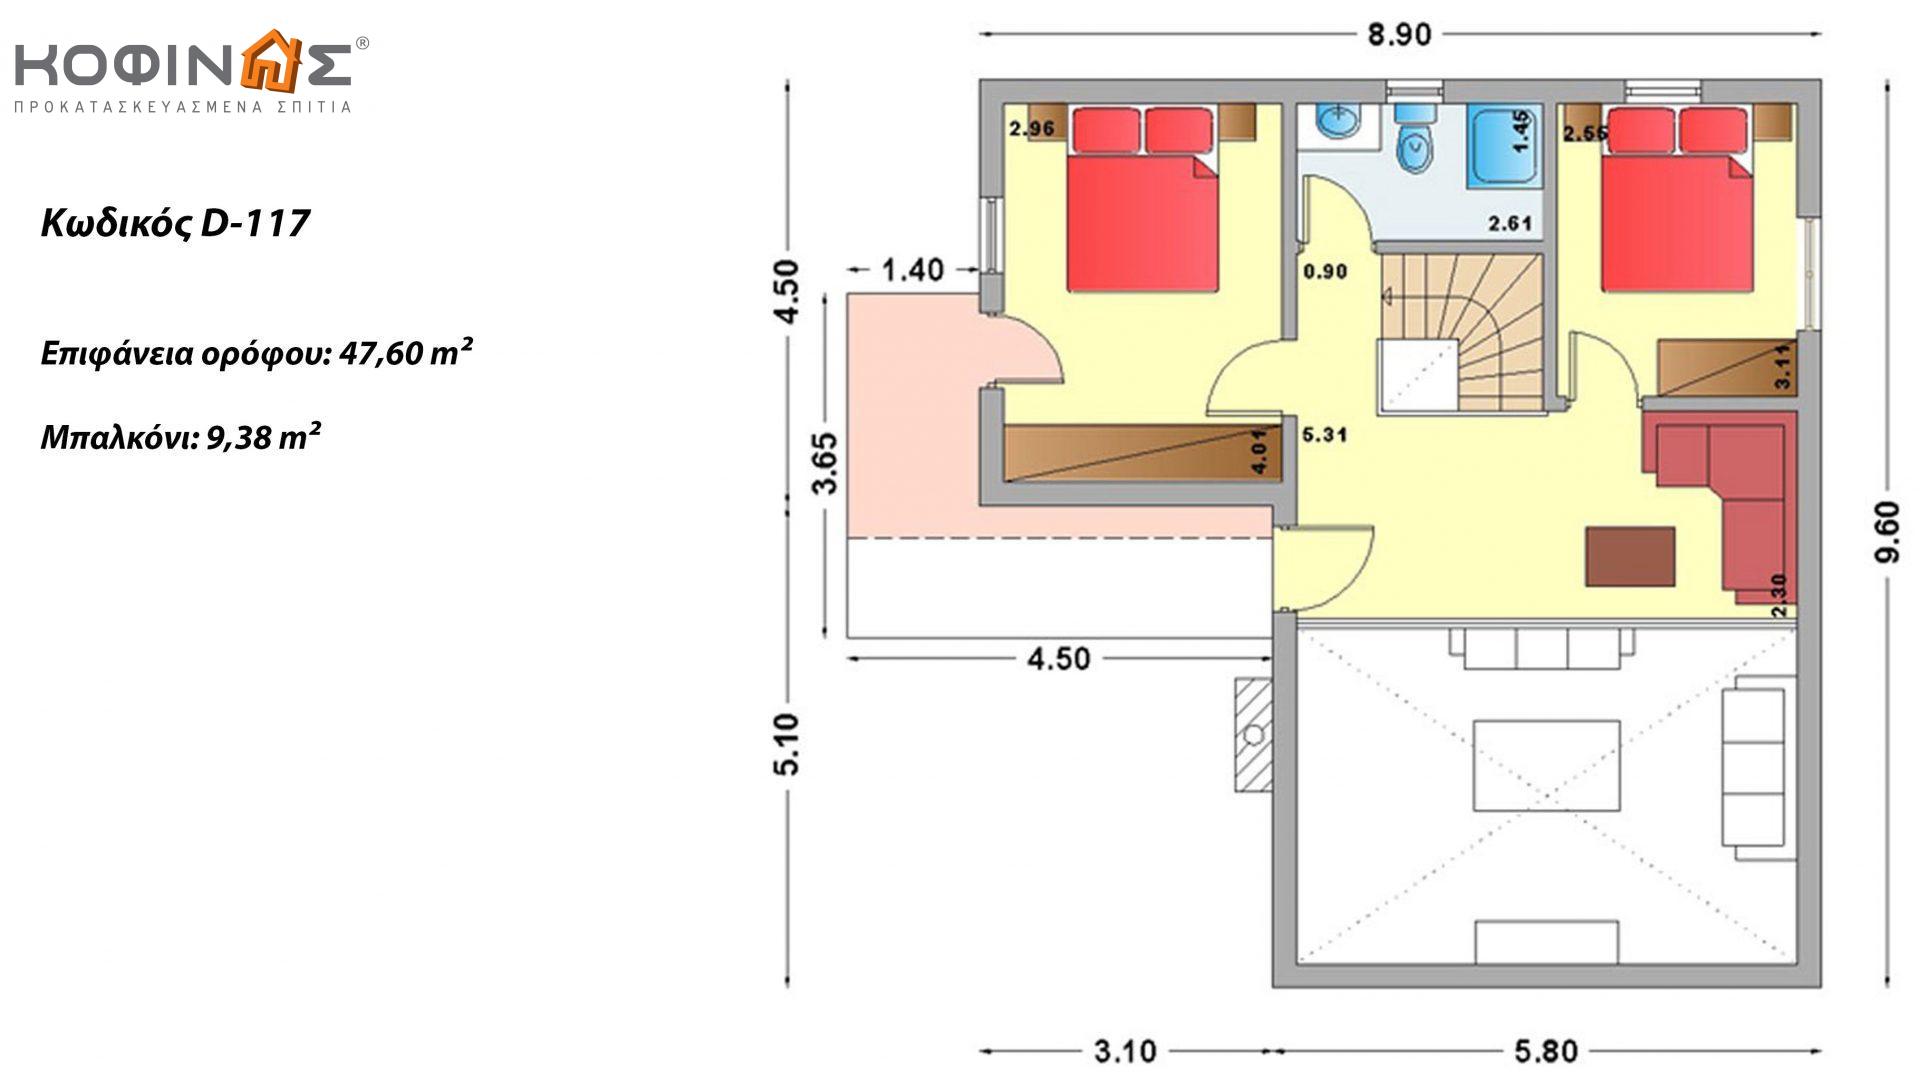 Διώροφη Κατοικία D-117, συνολικής επιφάνειας 117,20 τ.μ. , συνολική επιφάνεια στεγασμένων χώρων 25.45 τ.μ., μπαλκόνια 9.38 τ.μ.